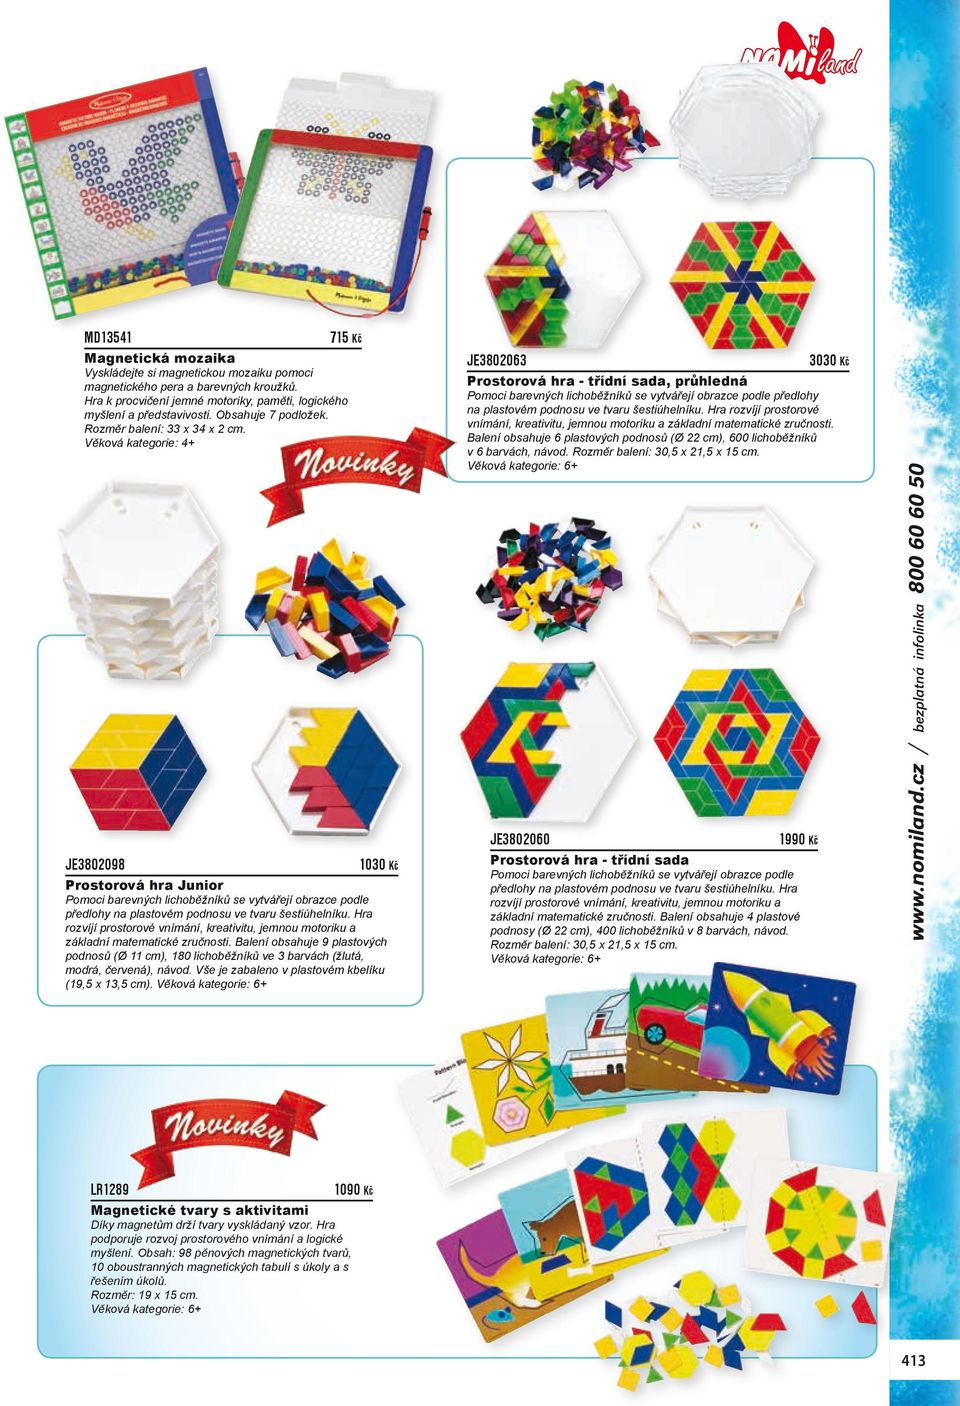 JE3802098 1030 Kč Prostorová hra Junior Pomoci barevných lichoběžníků se vytvářejí obrazce podle předlohy na plastovém podnosu ve tvaru šestiúhelníku.